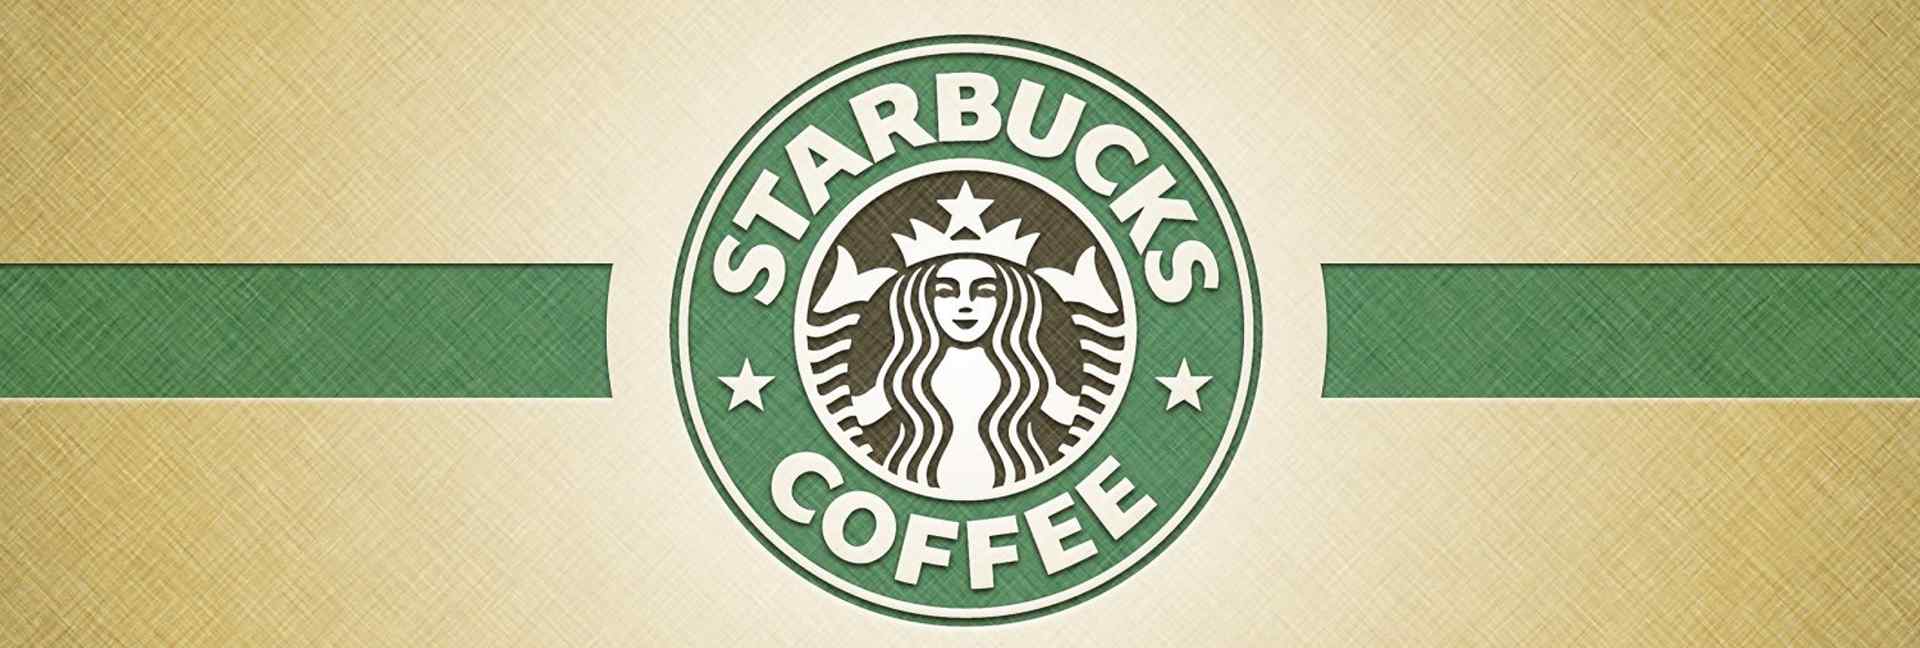 星巴克咖啡_星巴克logo图片_星巴克甜点、咖啡_星巴克创意logo图片壁纸